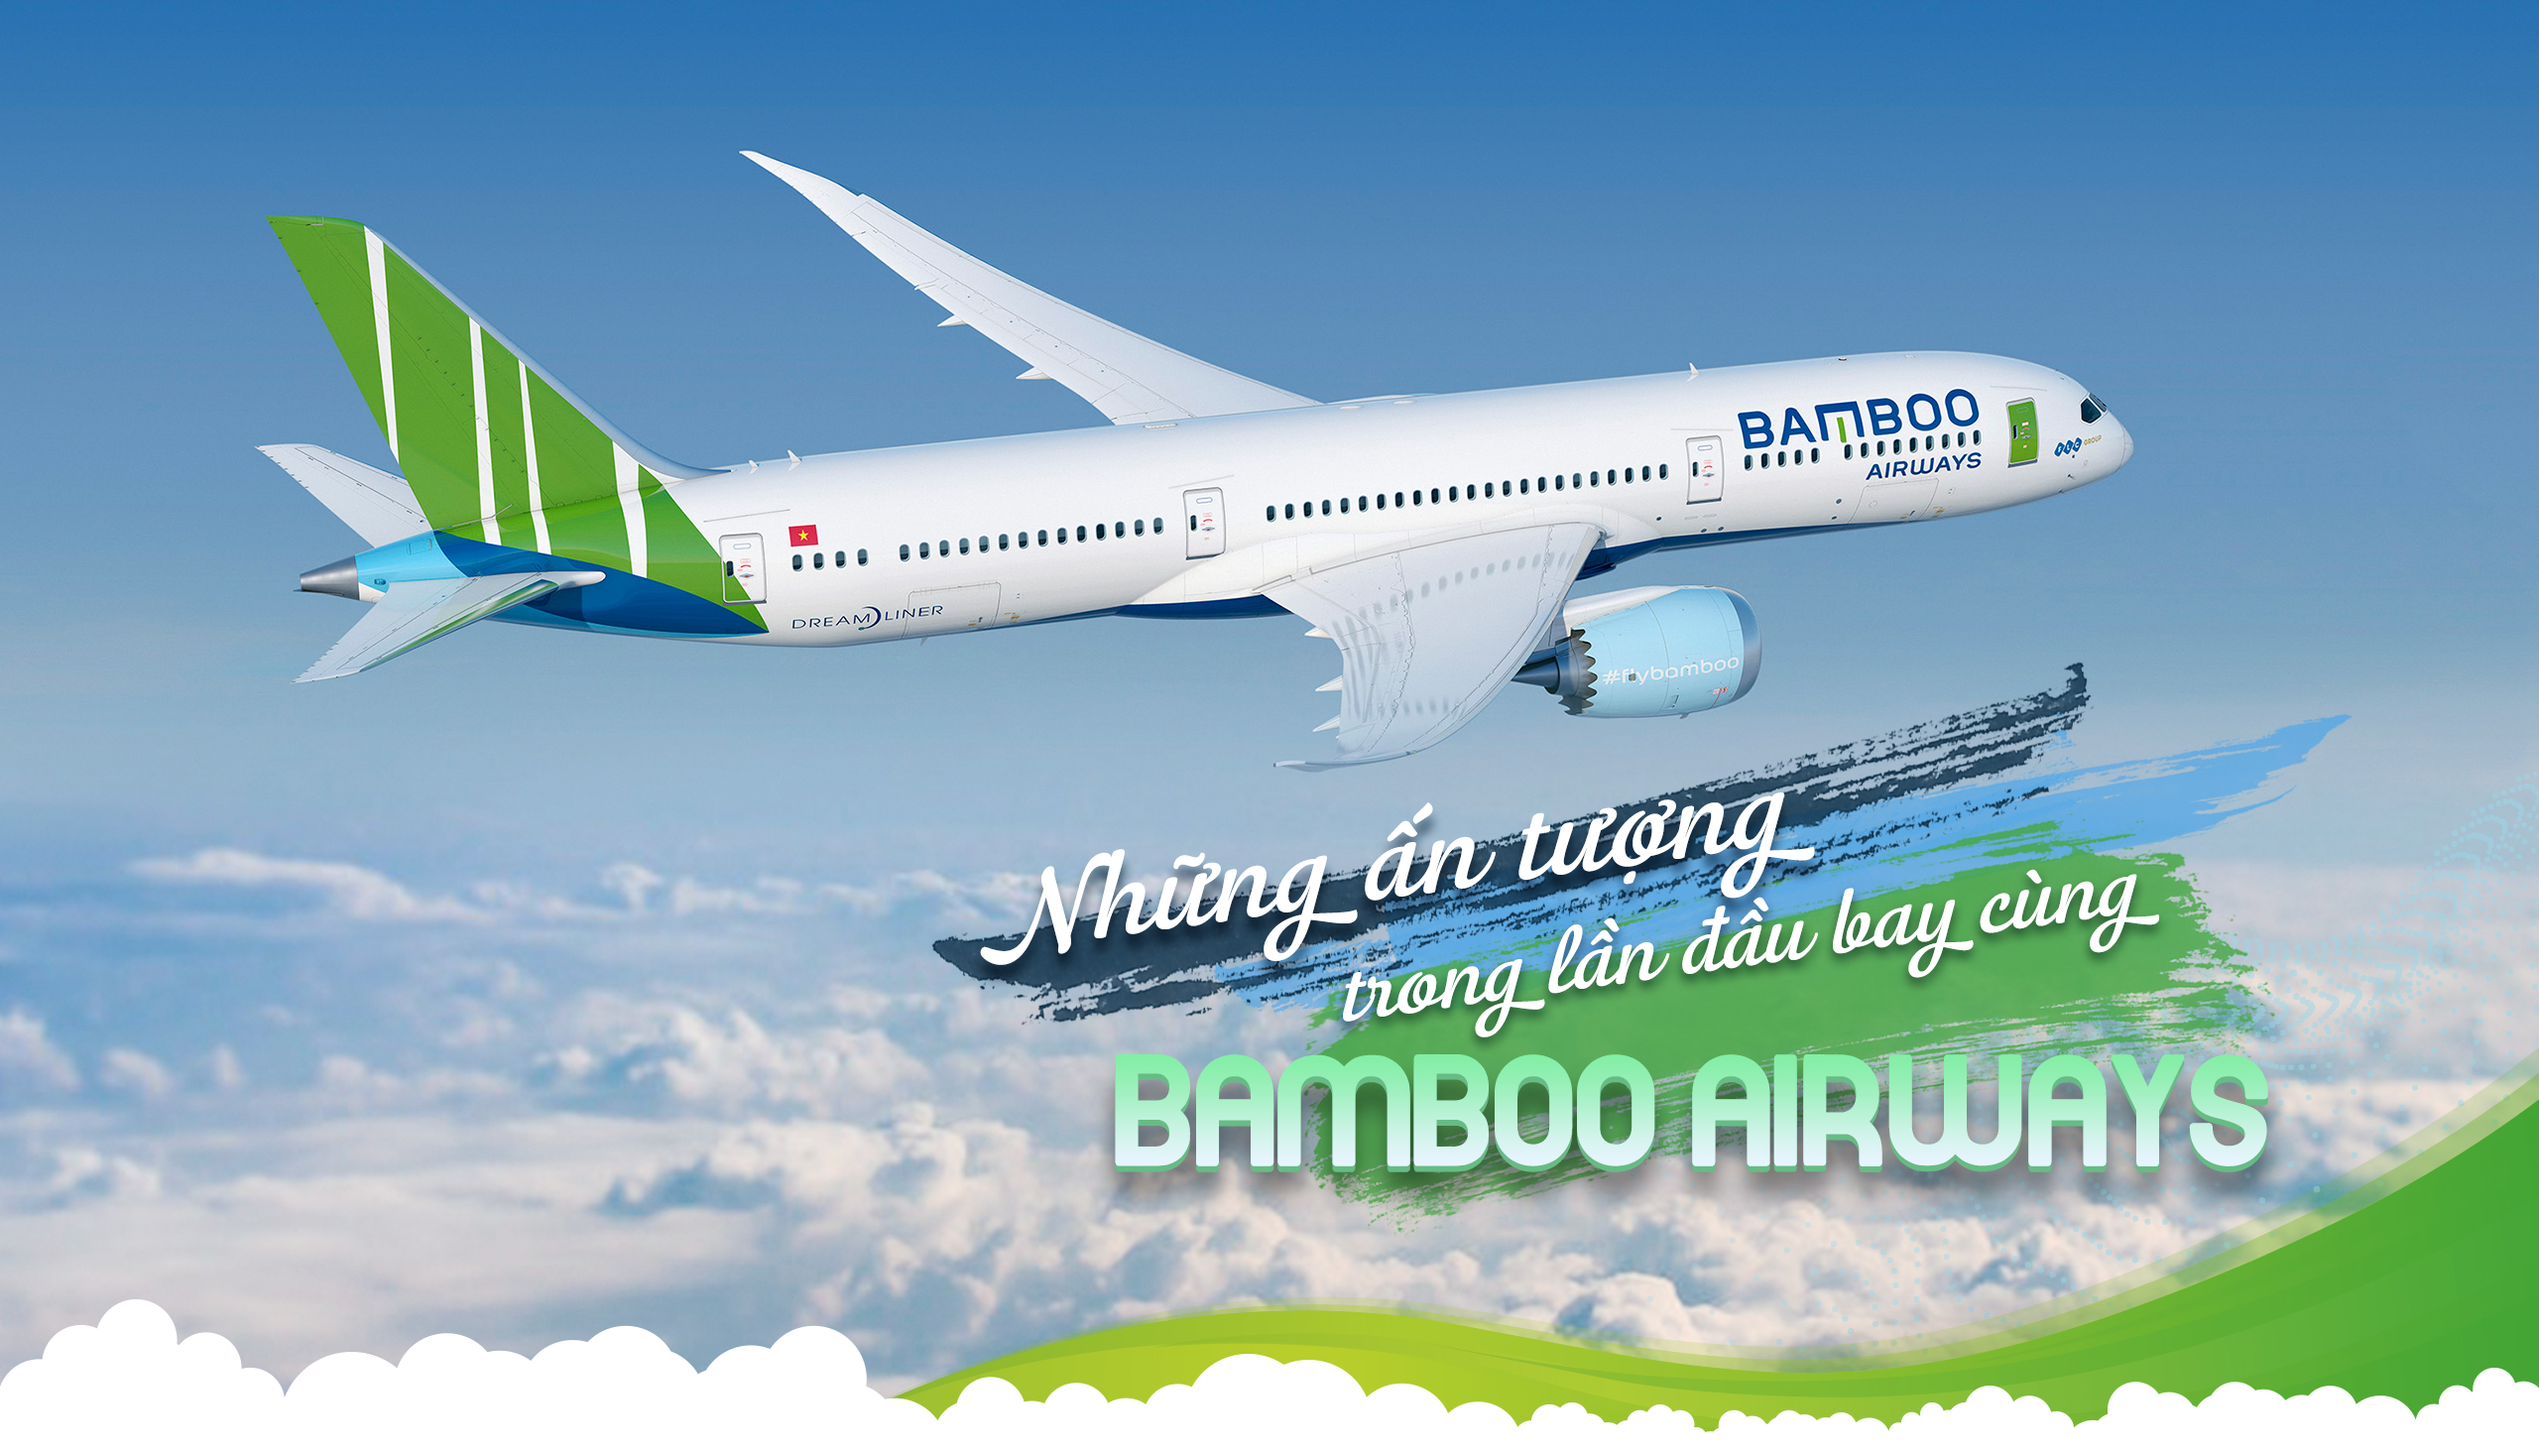 Tri ân Công ty Bamboo Airways Hà Nội đã cử CBNV tham gia khóa đào tạo nhân sự về VBA Excel tại IMIC 